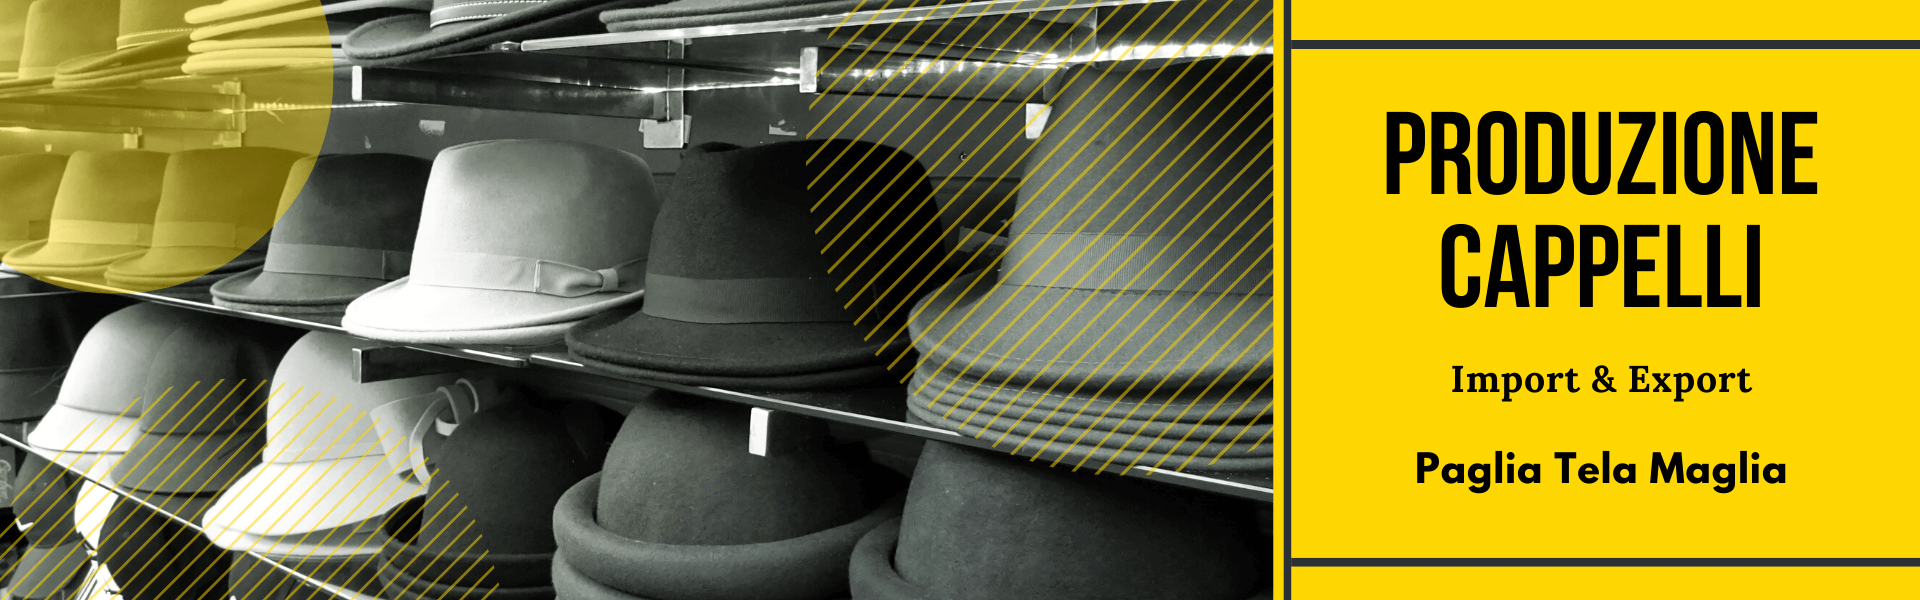 finardi milena produzione cappelli